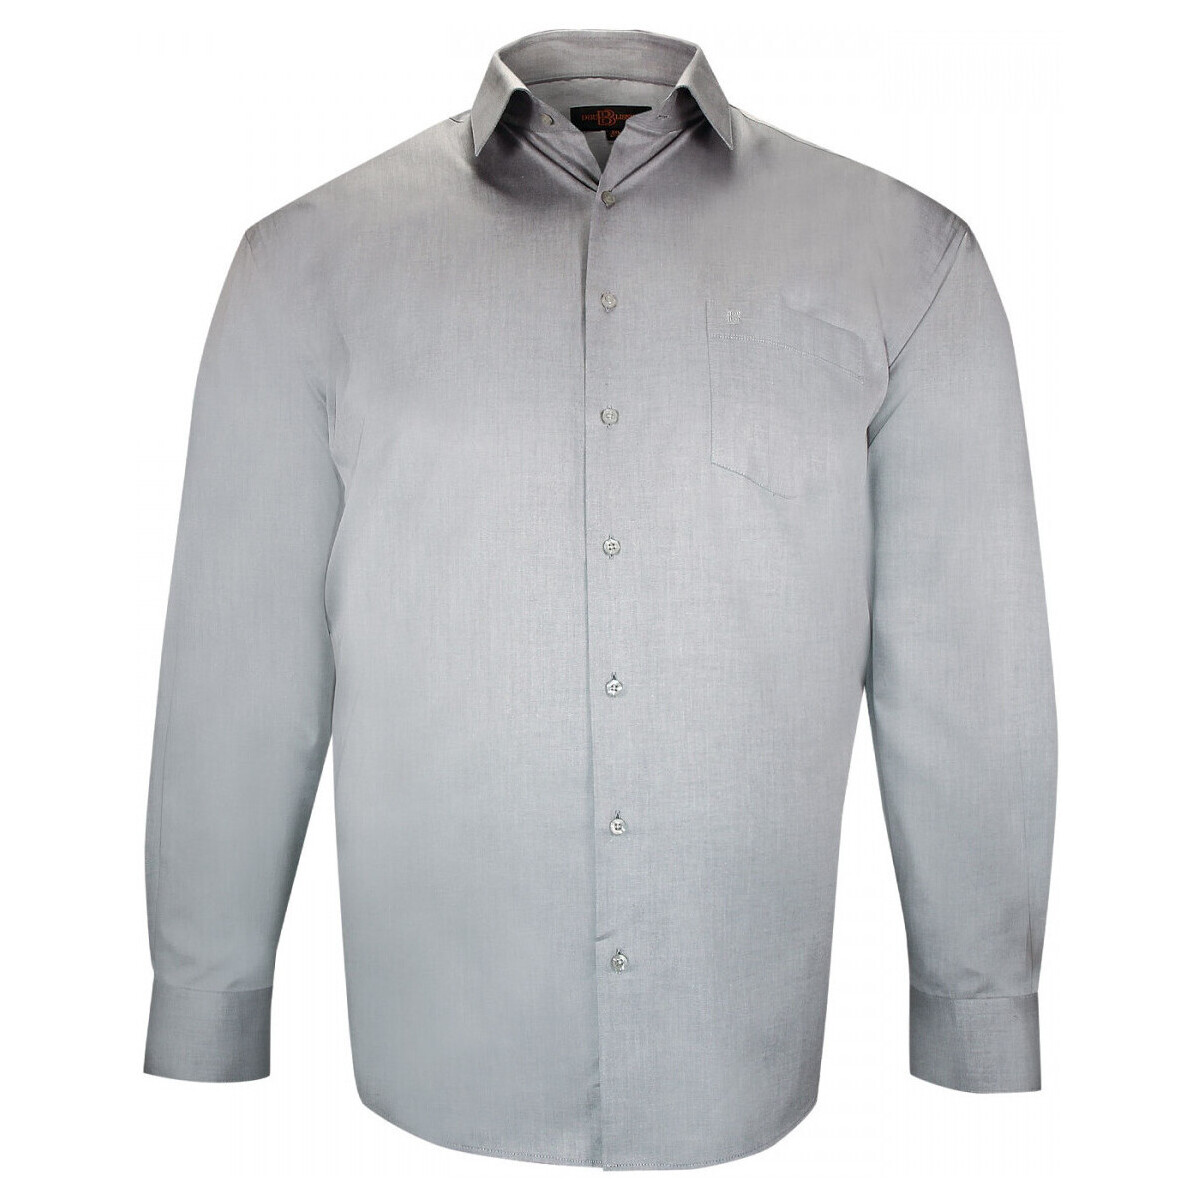 Vêtements Homme Chemises manches longues Doublissimo chemise forte taille unie lisio gris Gris